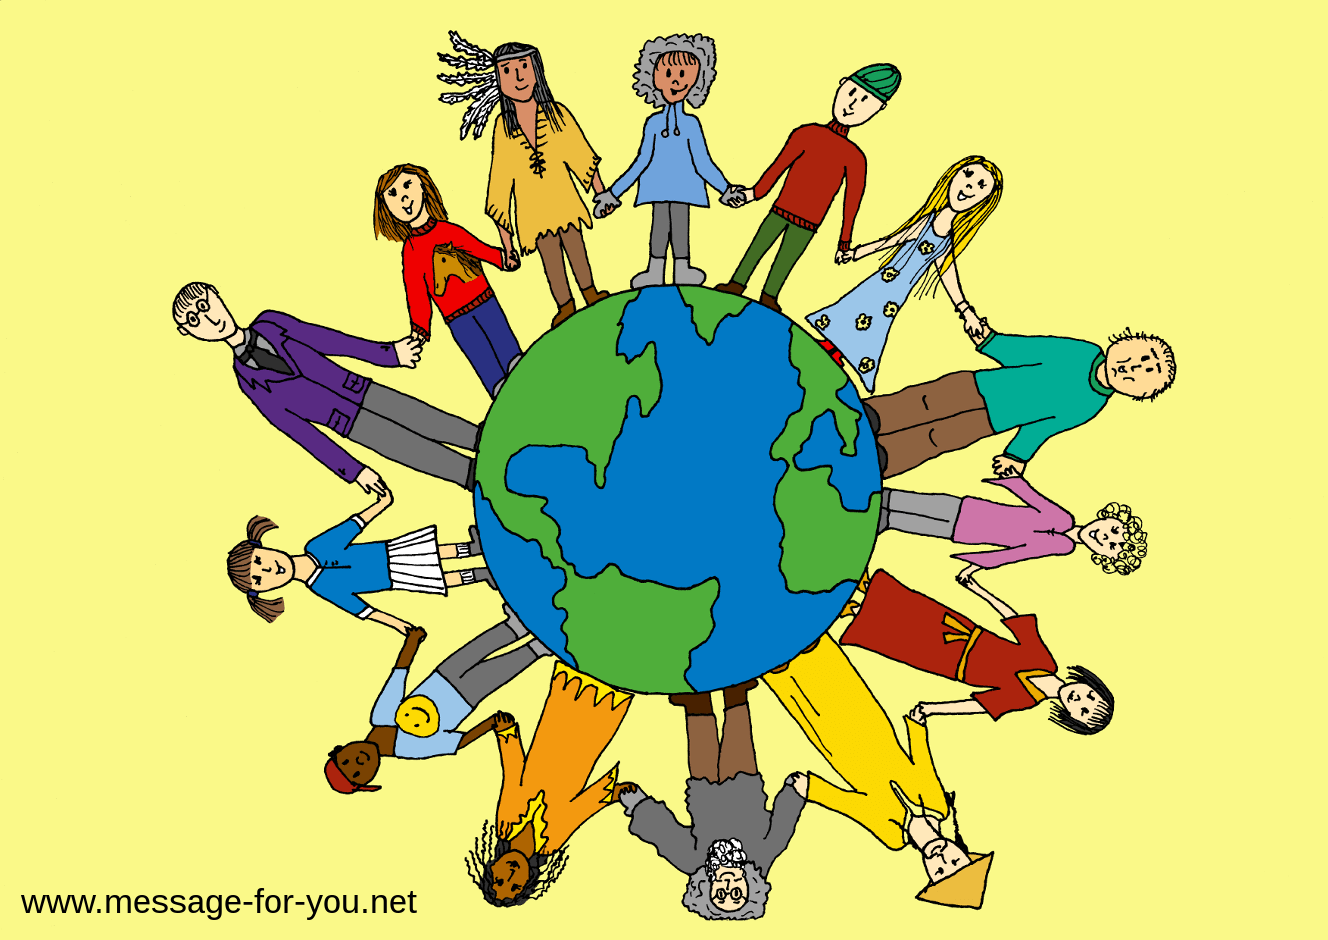 Цветной рисунок людей, держащихся за руки вокруг земного шара